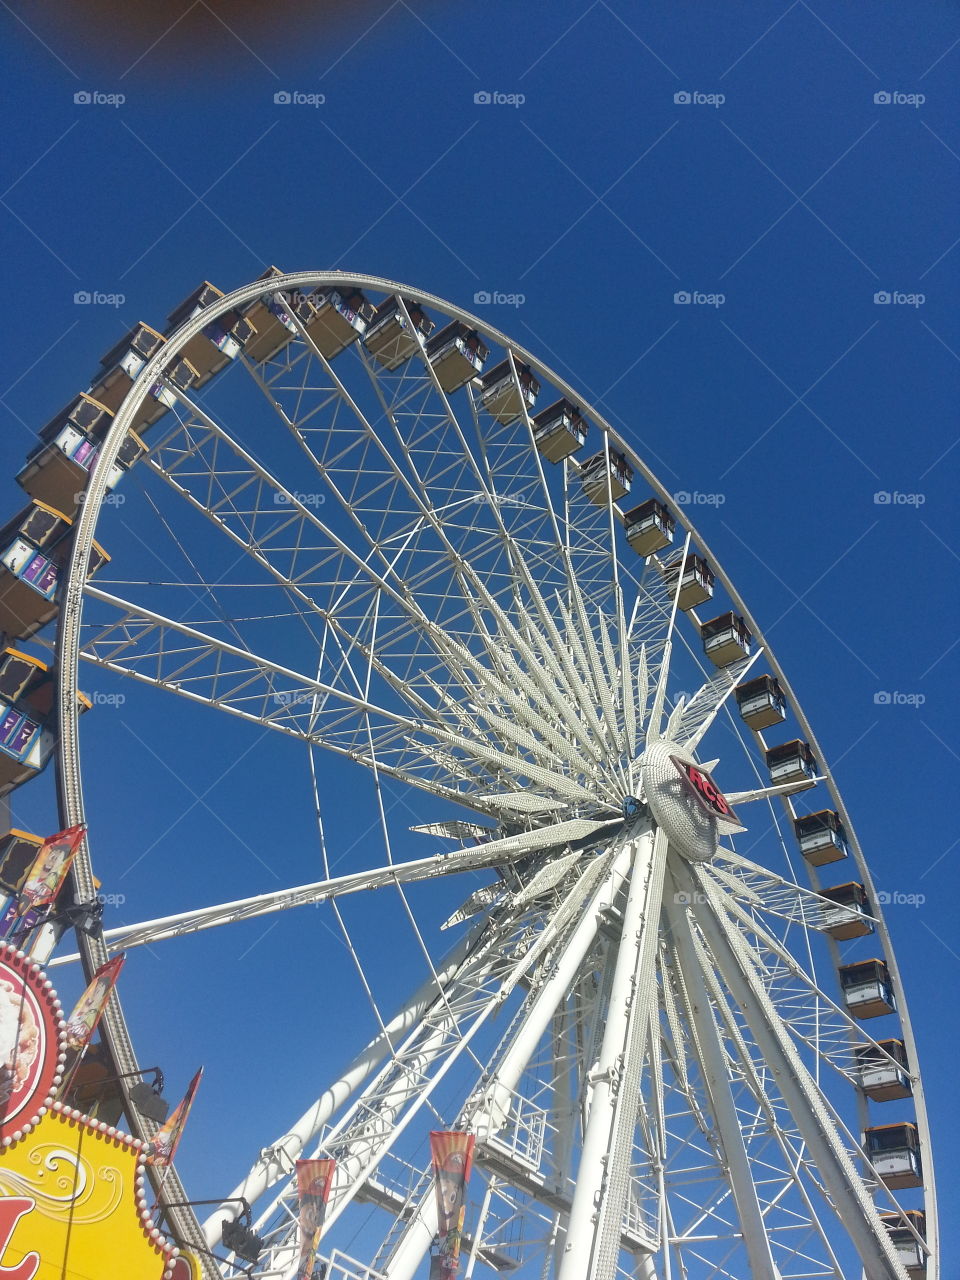 Ferris wheel, fair, carnival